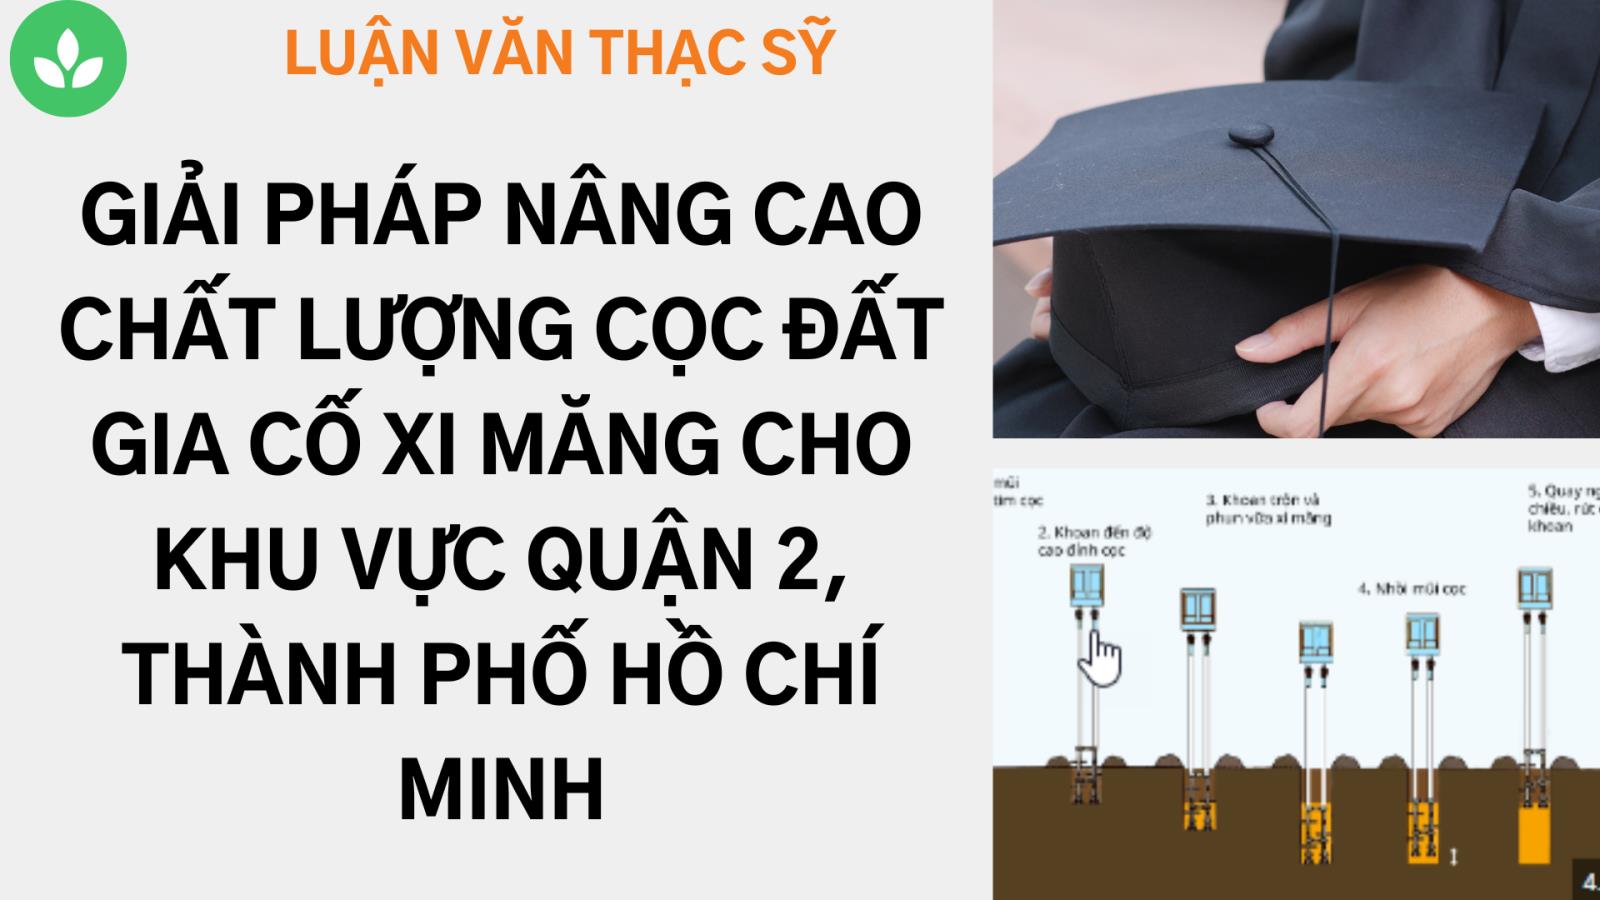 Nghiên cứu các giải pháp nâng cao chất lượng cọc đất gia cố xi măng cho khu vực Quận 2, Thành phố Hồ Chí Minh